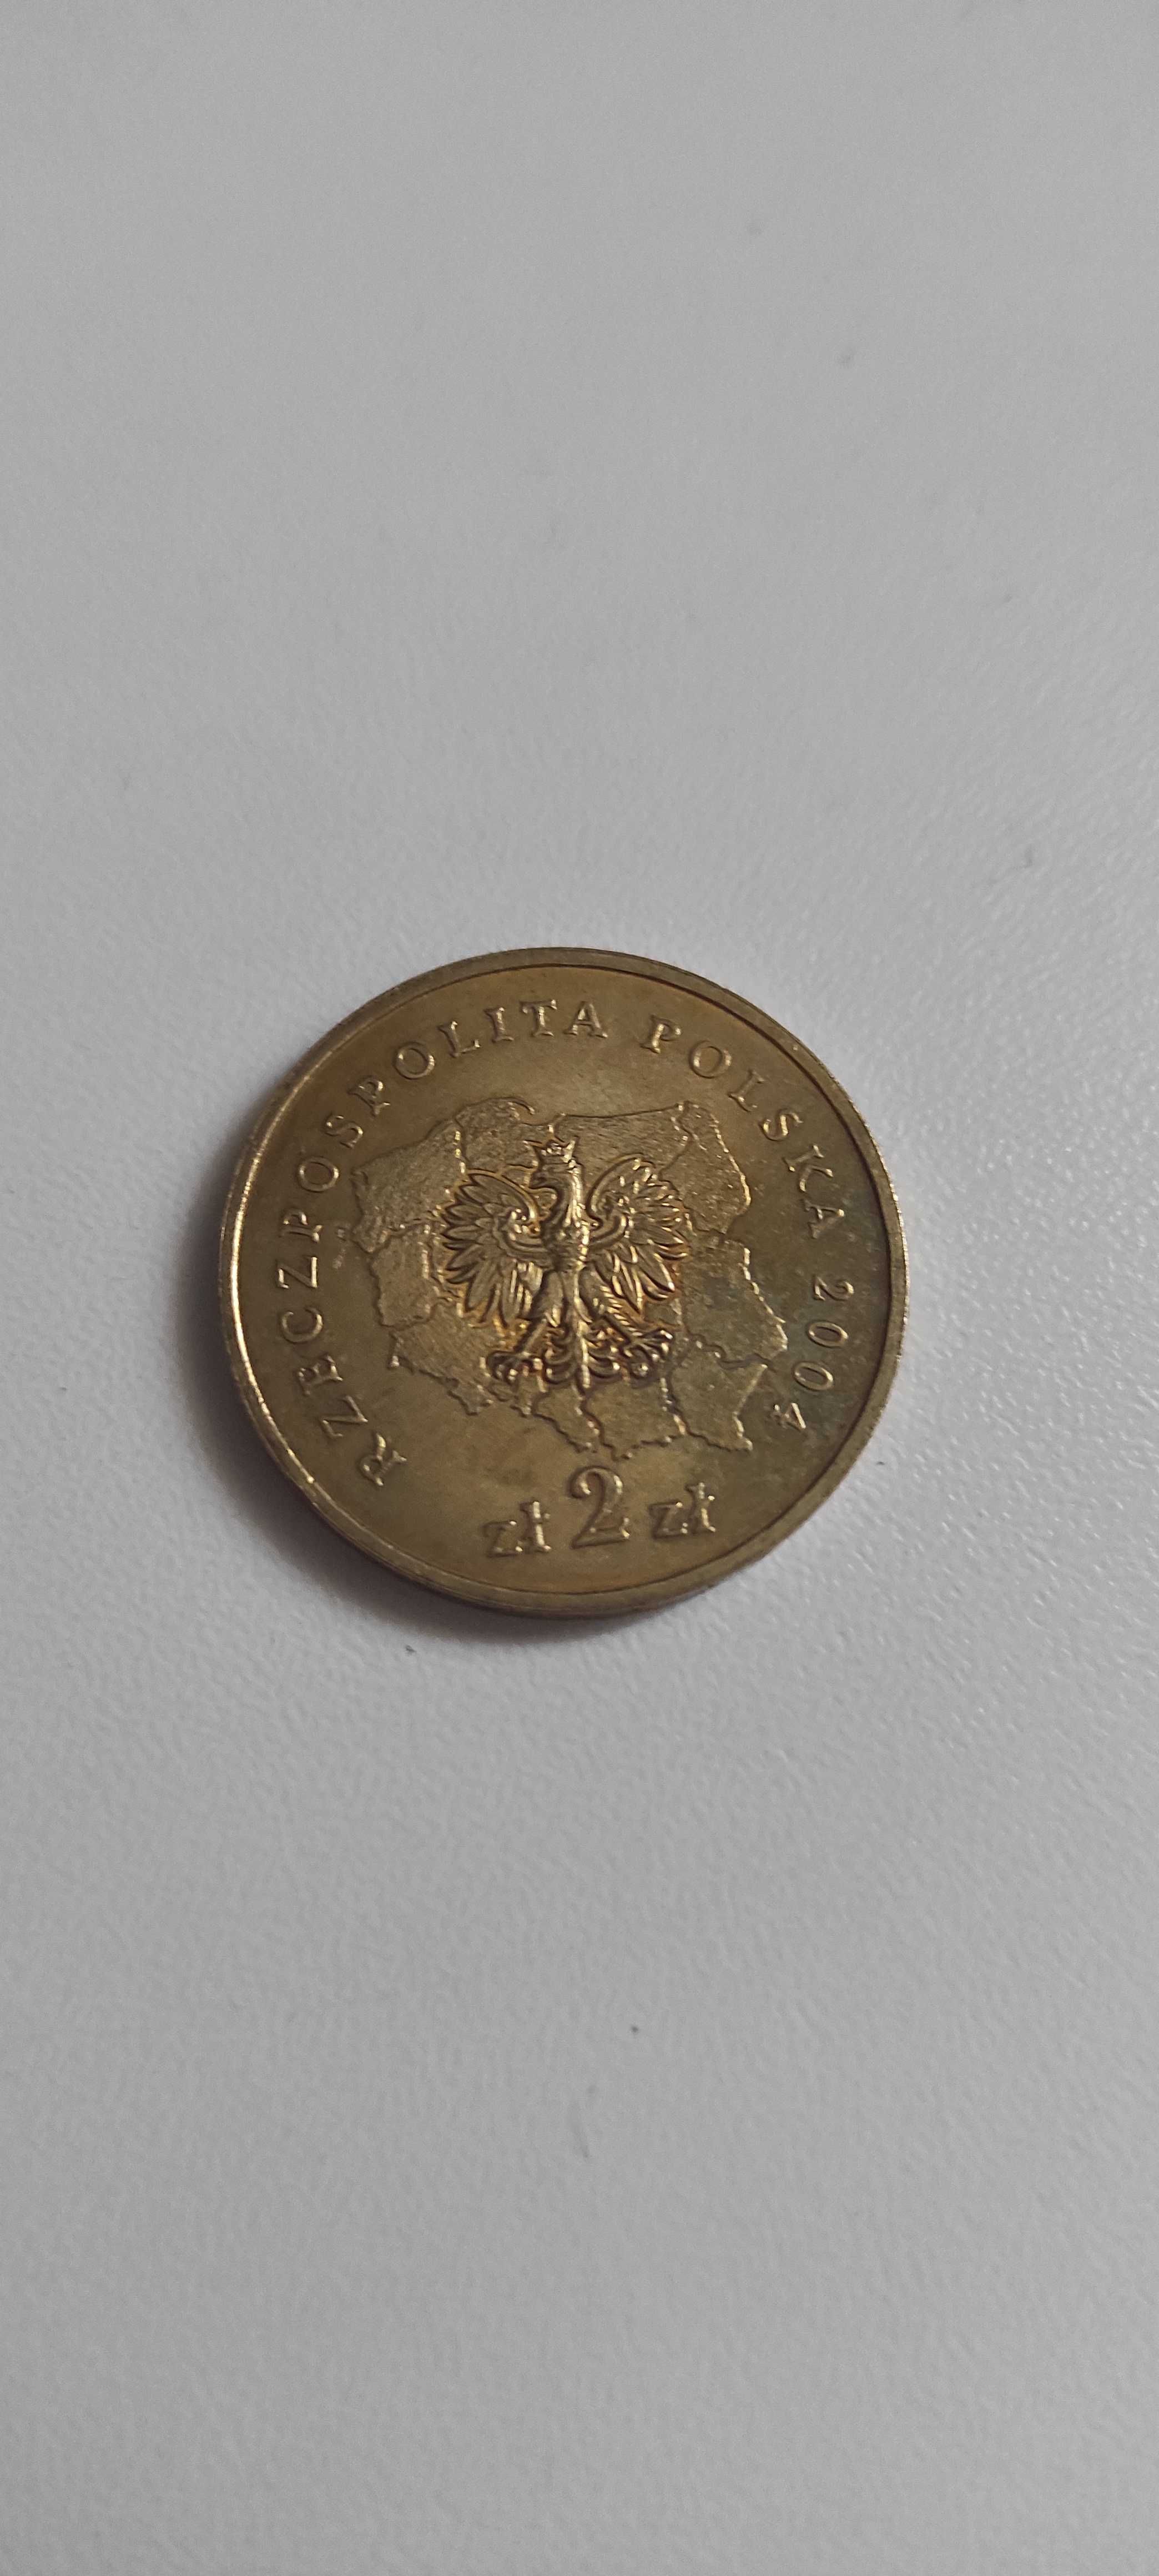 Województwo Opolskie moneta kolekcjonerska okolicznościowa